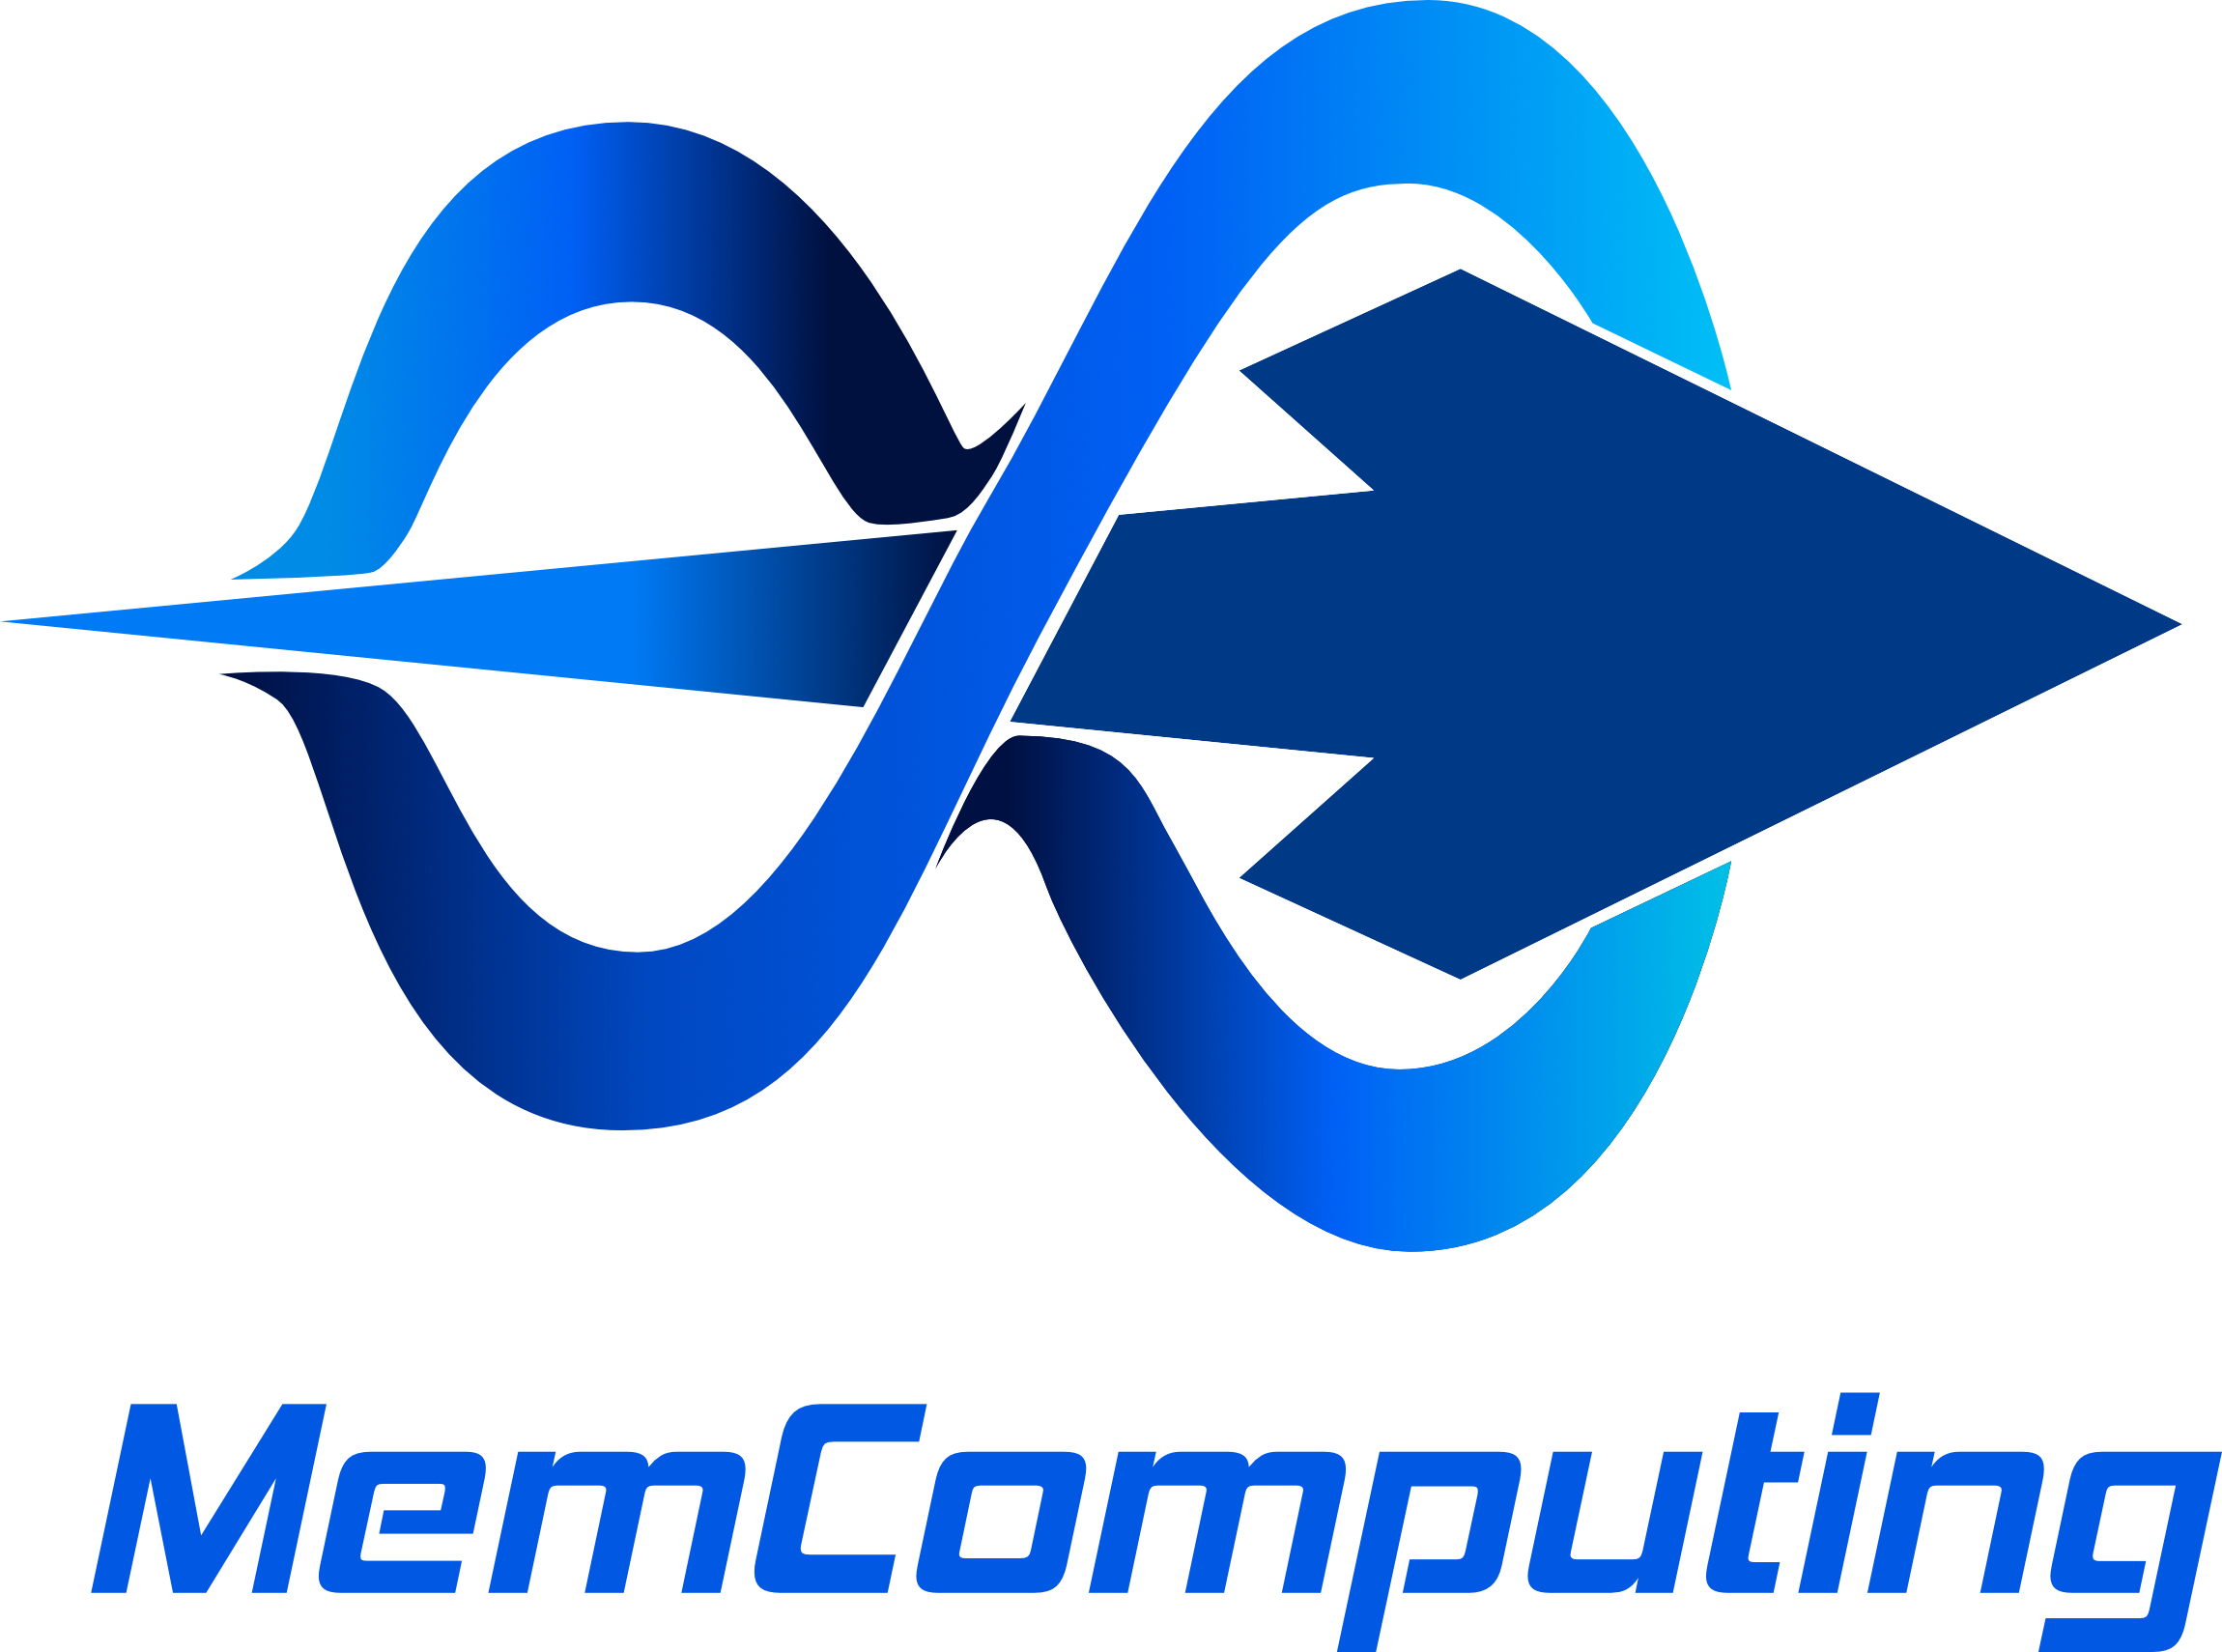 MemComputing